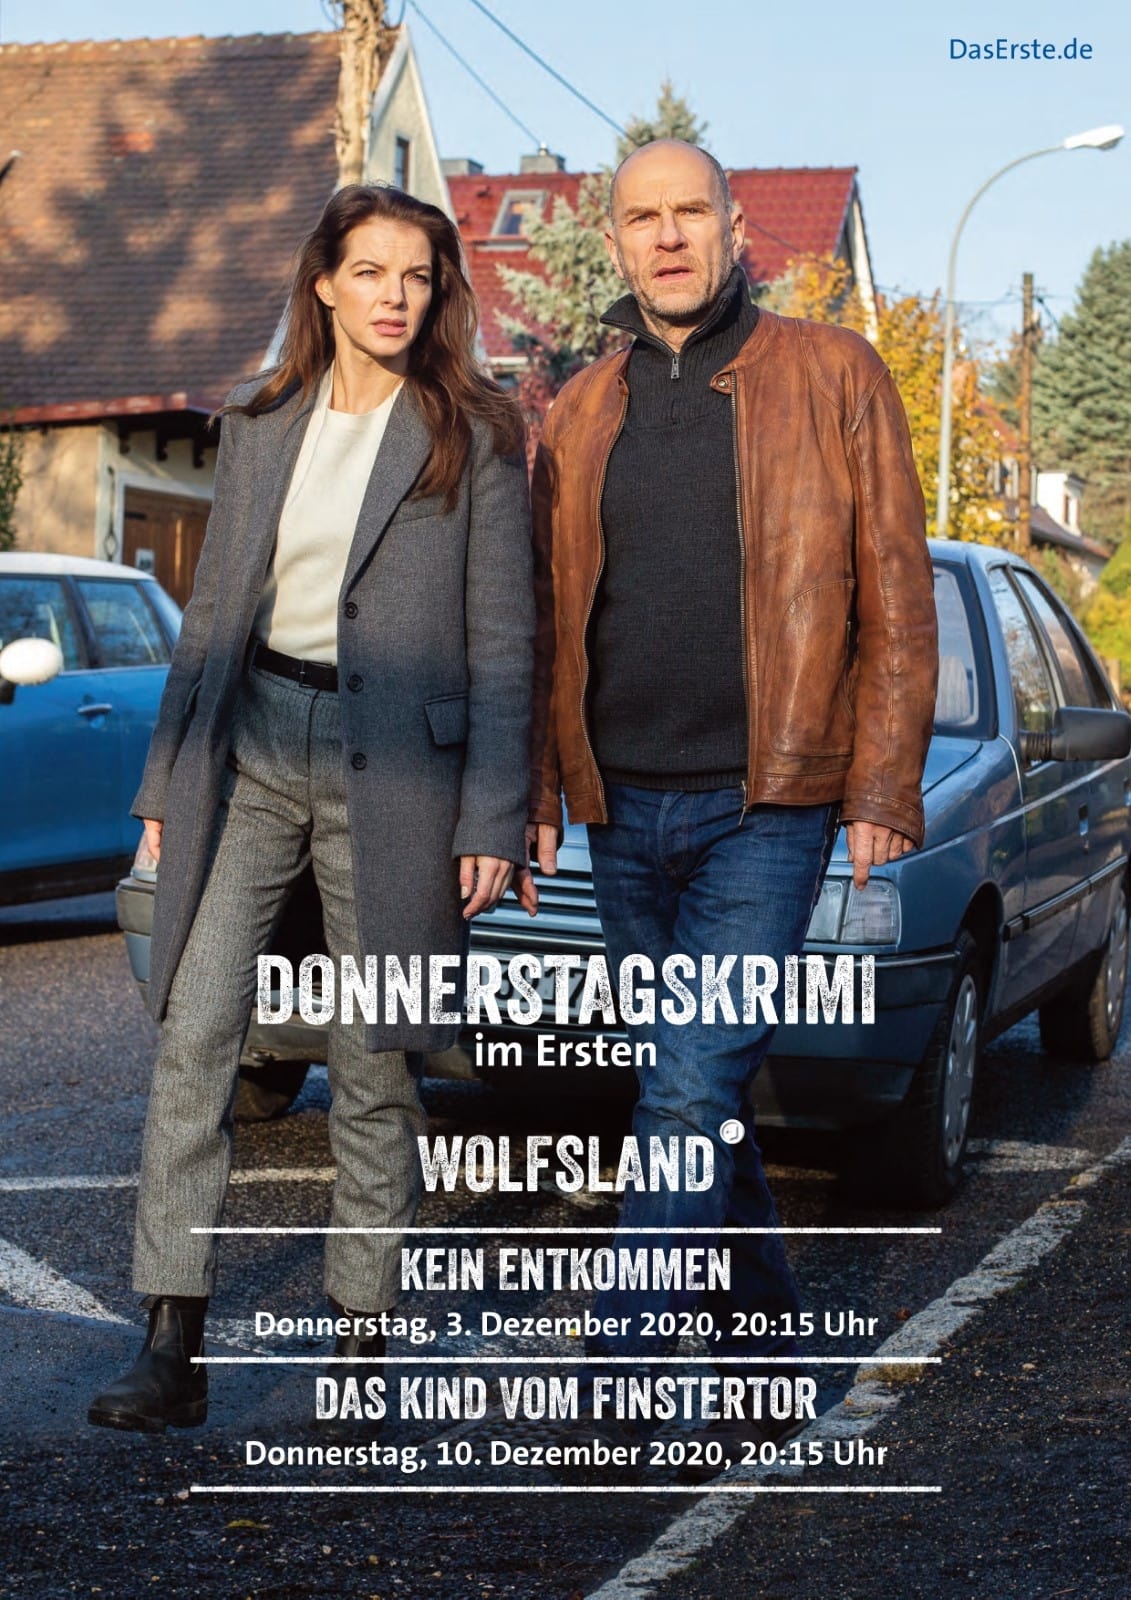 Wolfsland - Kein entkommen